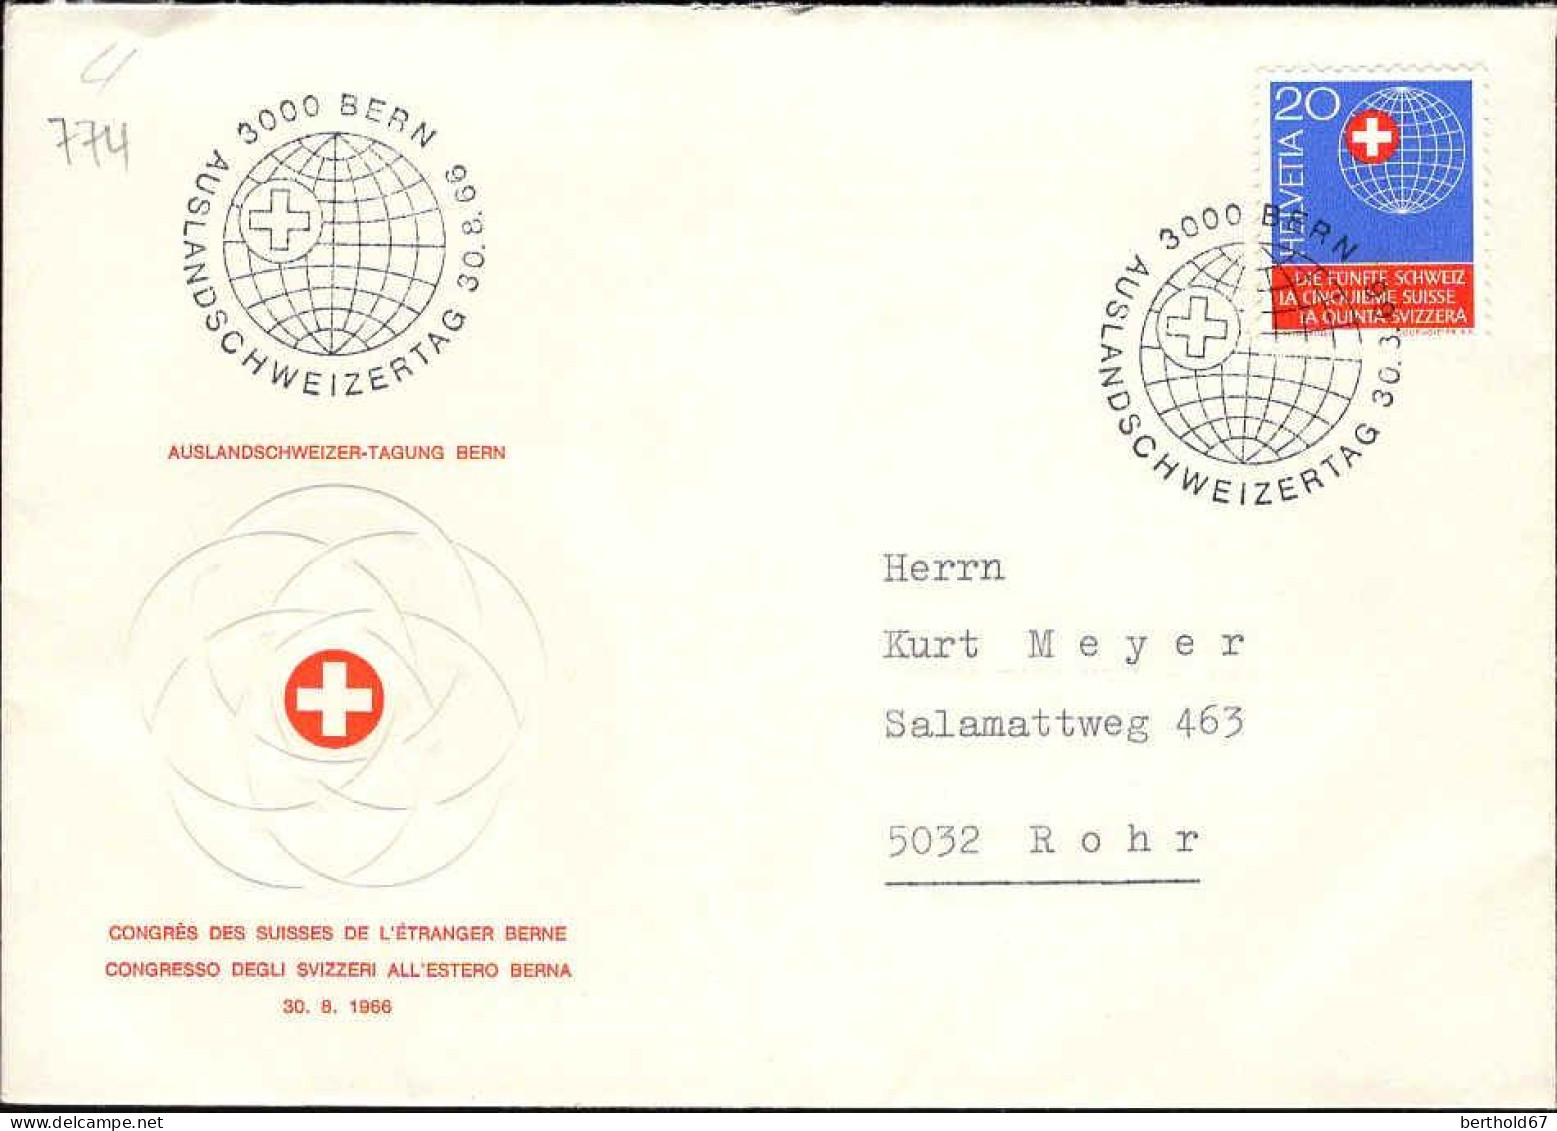 Suisse Poste Obl Yv: 774 Mi:841 La Cinquième Suisse (TB Cachet à Date) 30.8.66 - Covers & Documents